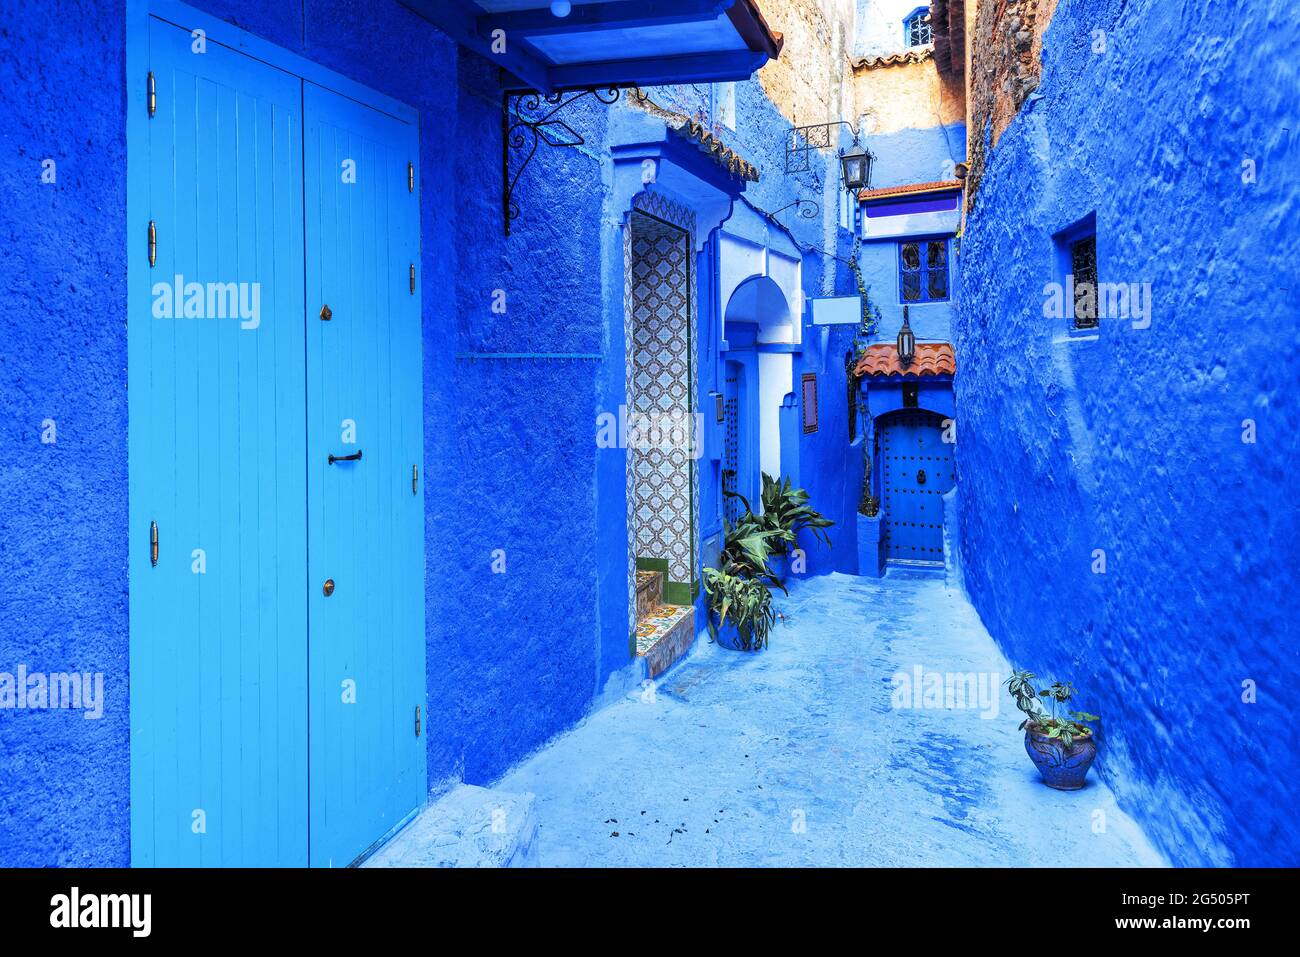 Patio estrecho con paredes tradicionales de color azul de las casas en la antigua medina de Chefchaouen. Marruecos, África del Norte Foto de stock